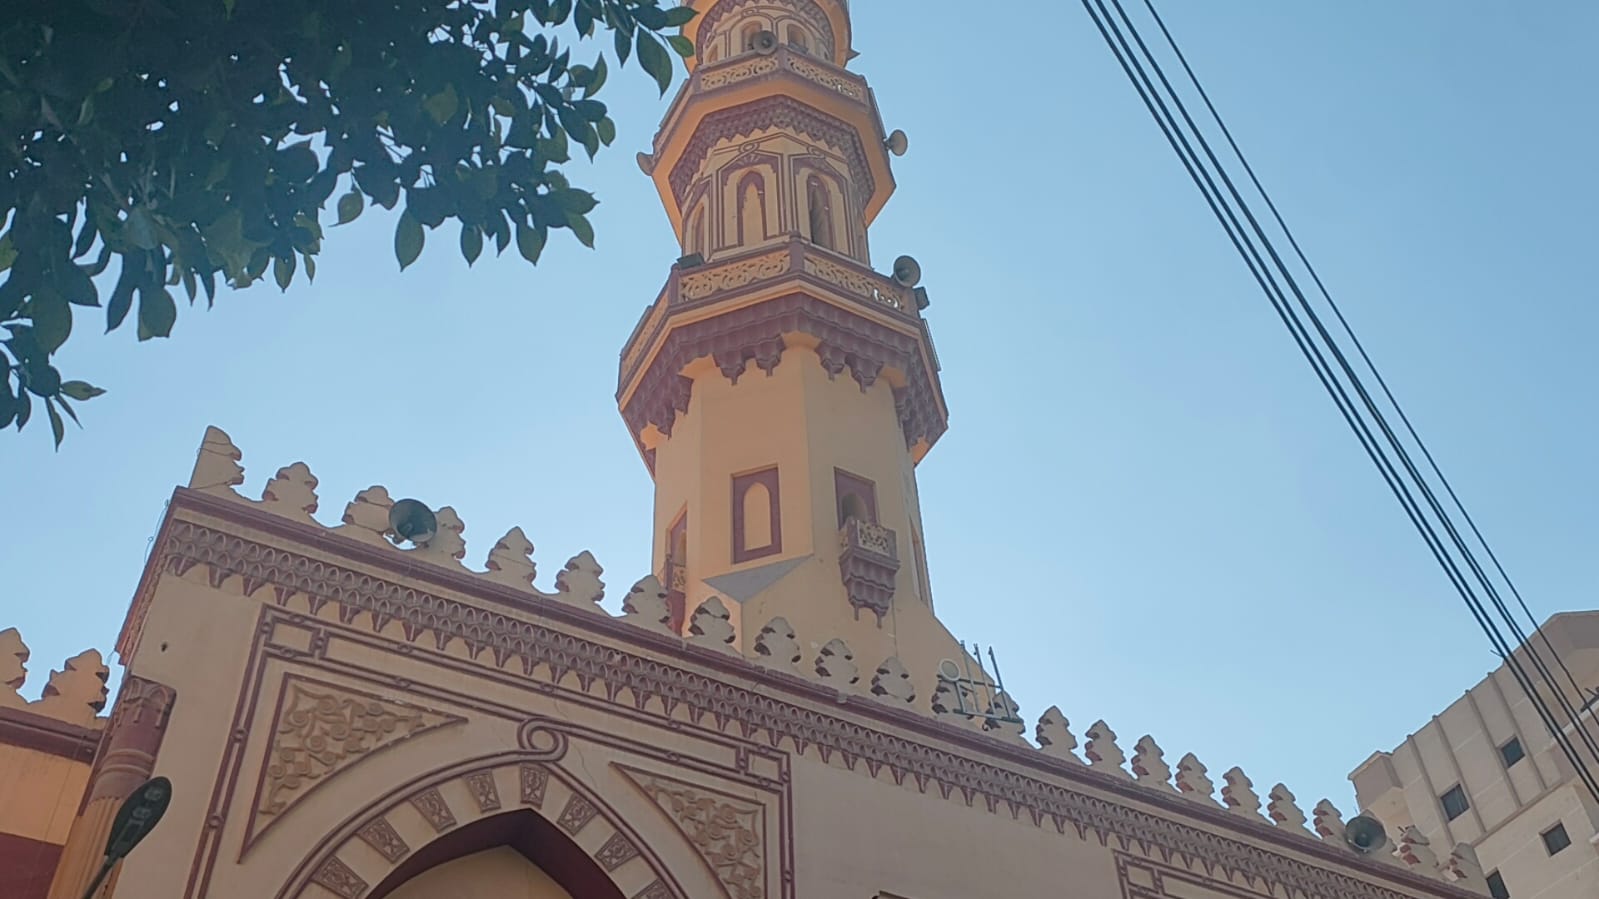 واجهة المسجد الأموي بأسيوط أقدم المساجد التاريخية بأسيوط (1)